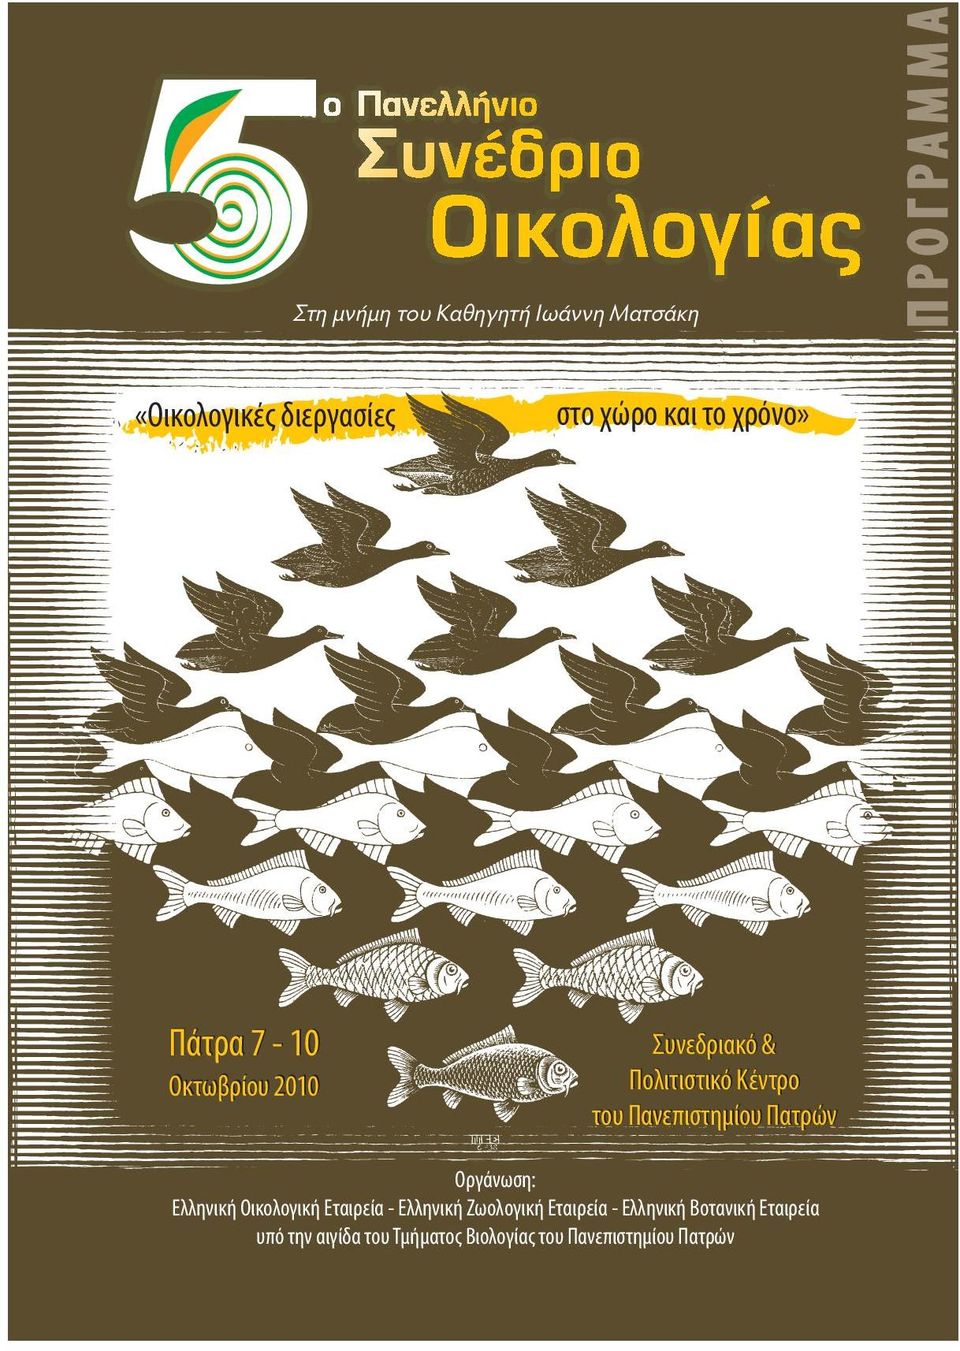 Πανεπιστημίου Πατρών Οργάνωση: Ελληνική Οικολογική Εταιρεία - Ελληνική Ζωολογική